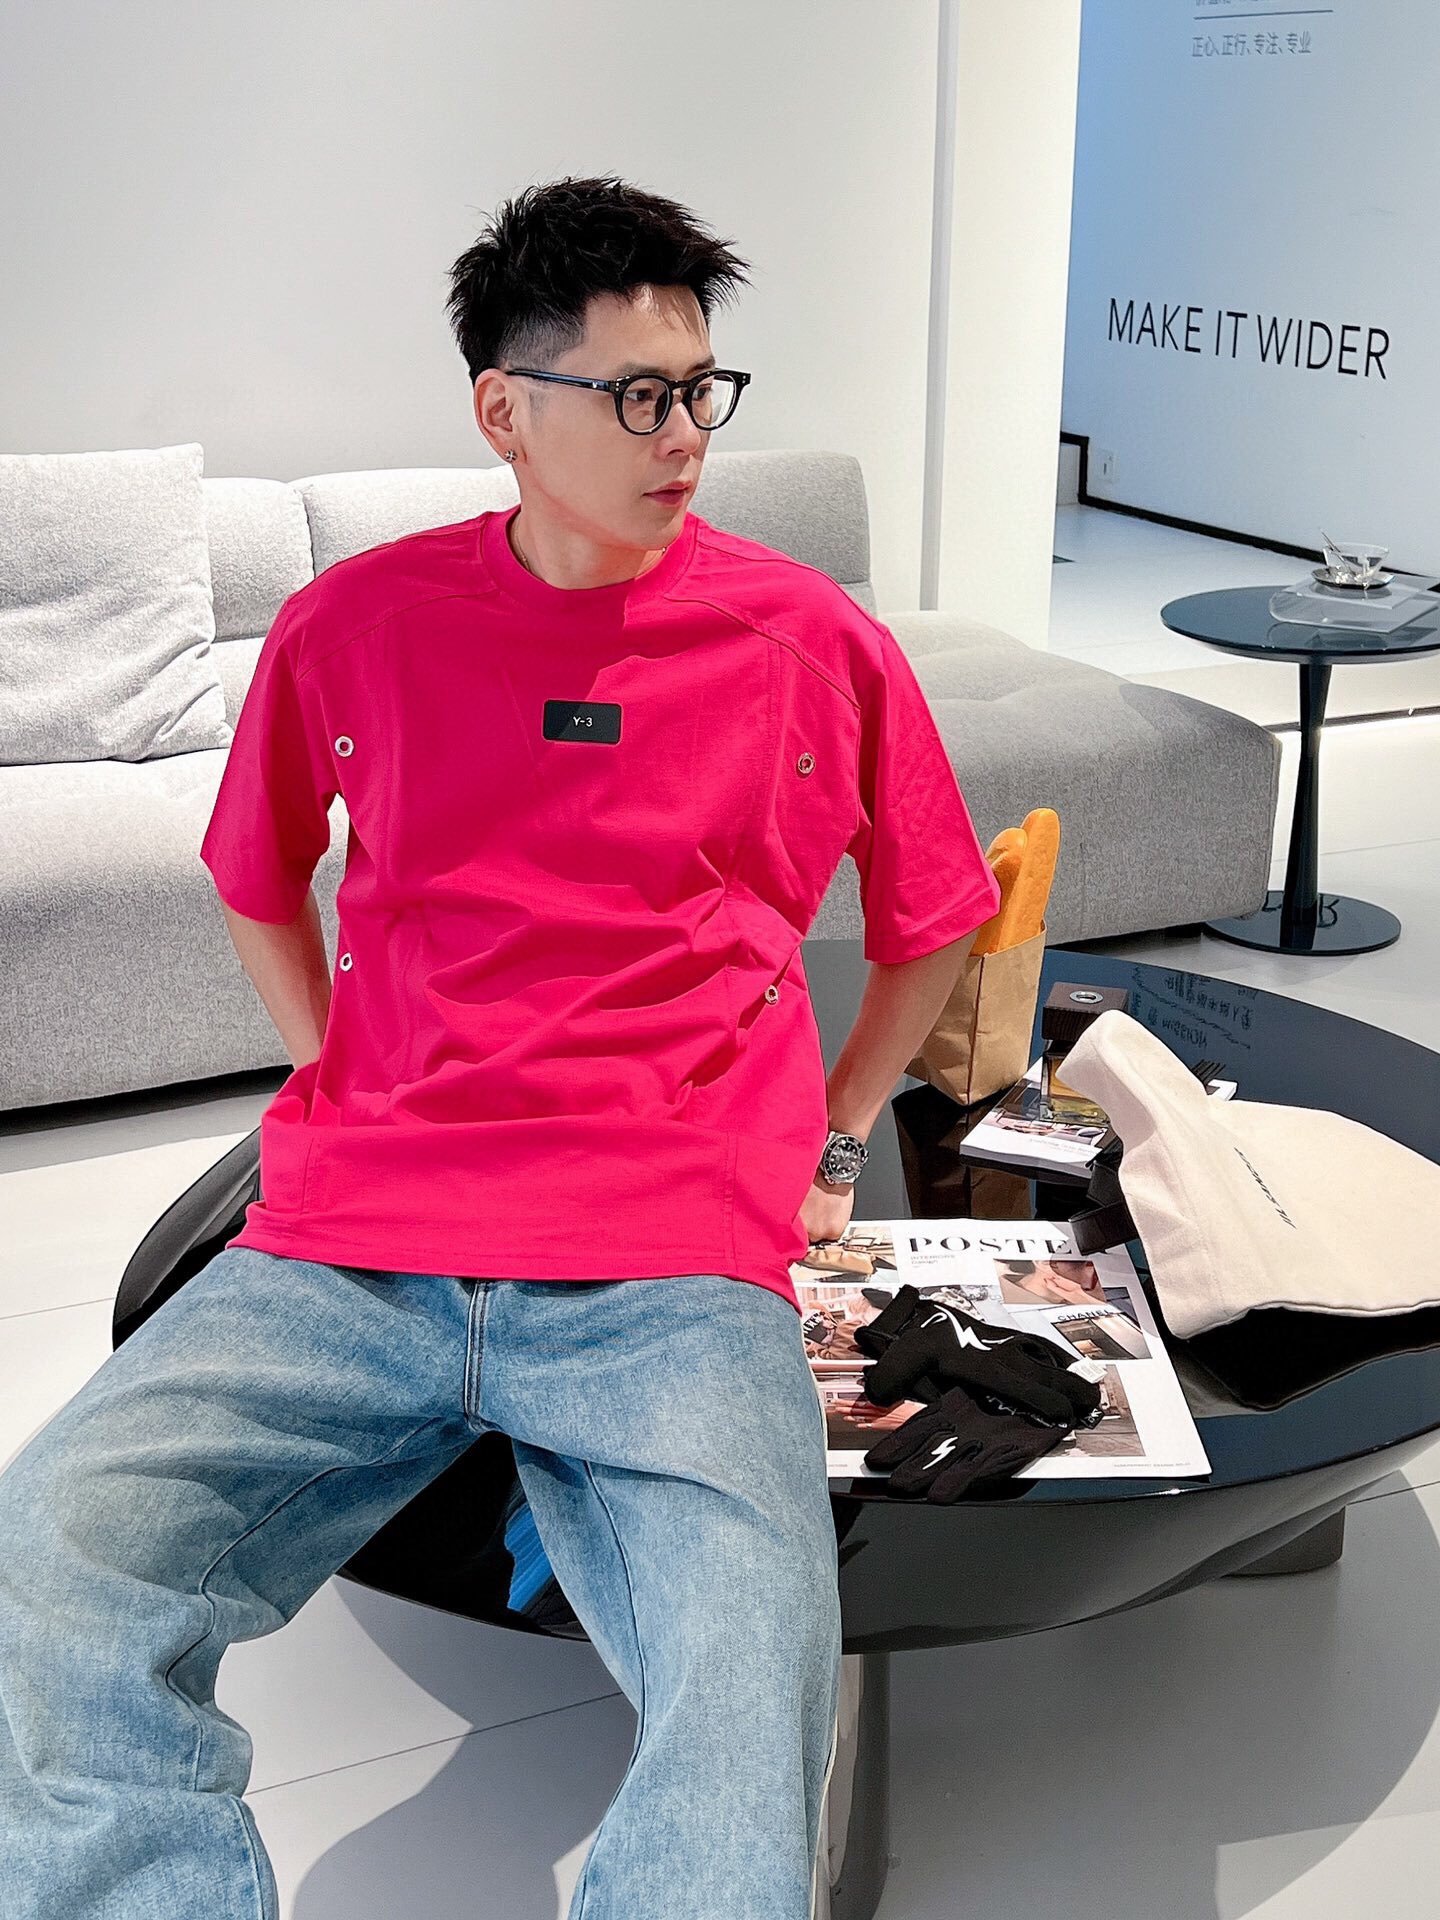 新款短袖T恤拼接设计迎来这一季的销量榜首冠军首位Yamamoto擅长的前卫美学和对于运动科技的专长在这件